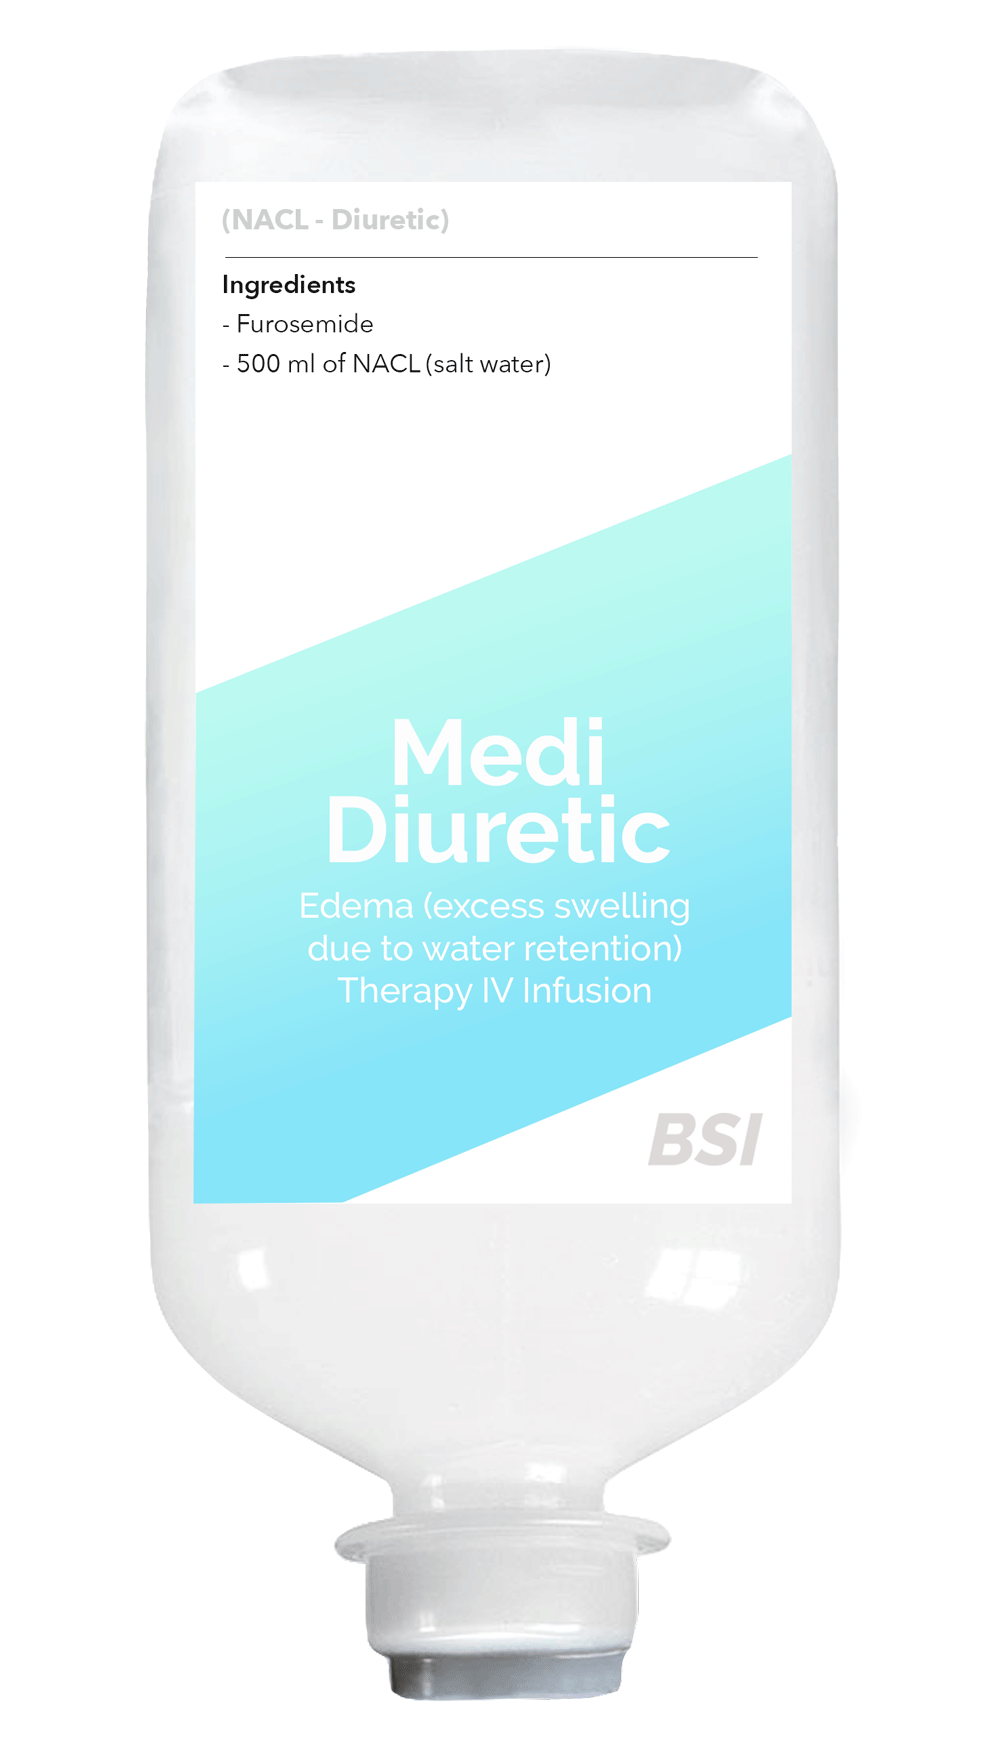 Medi Diuretic